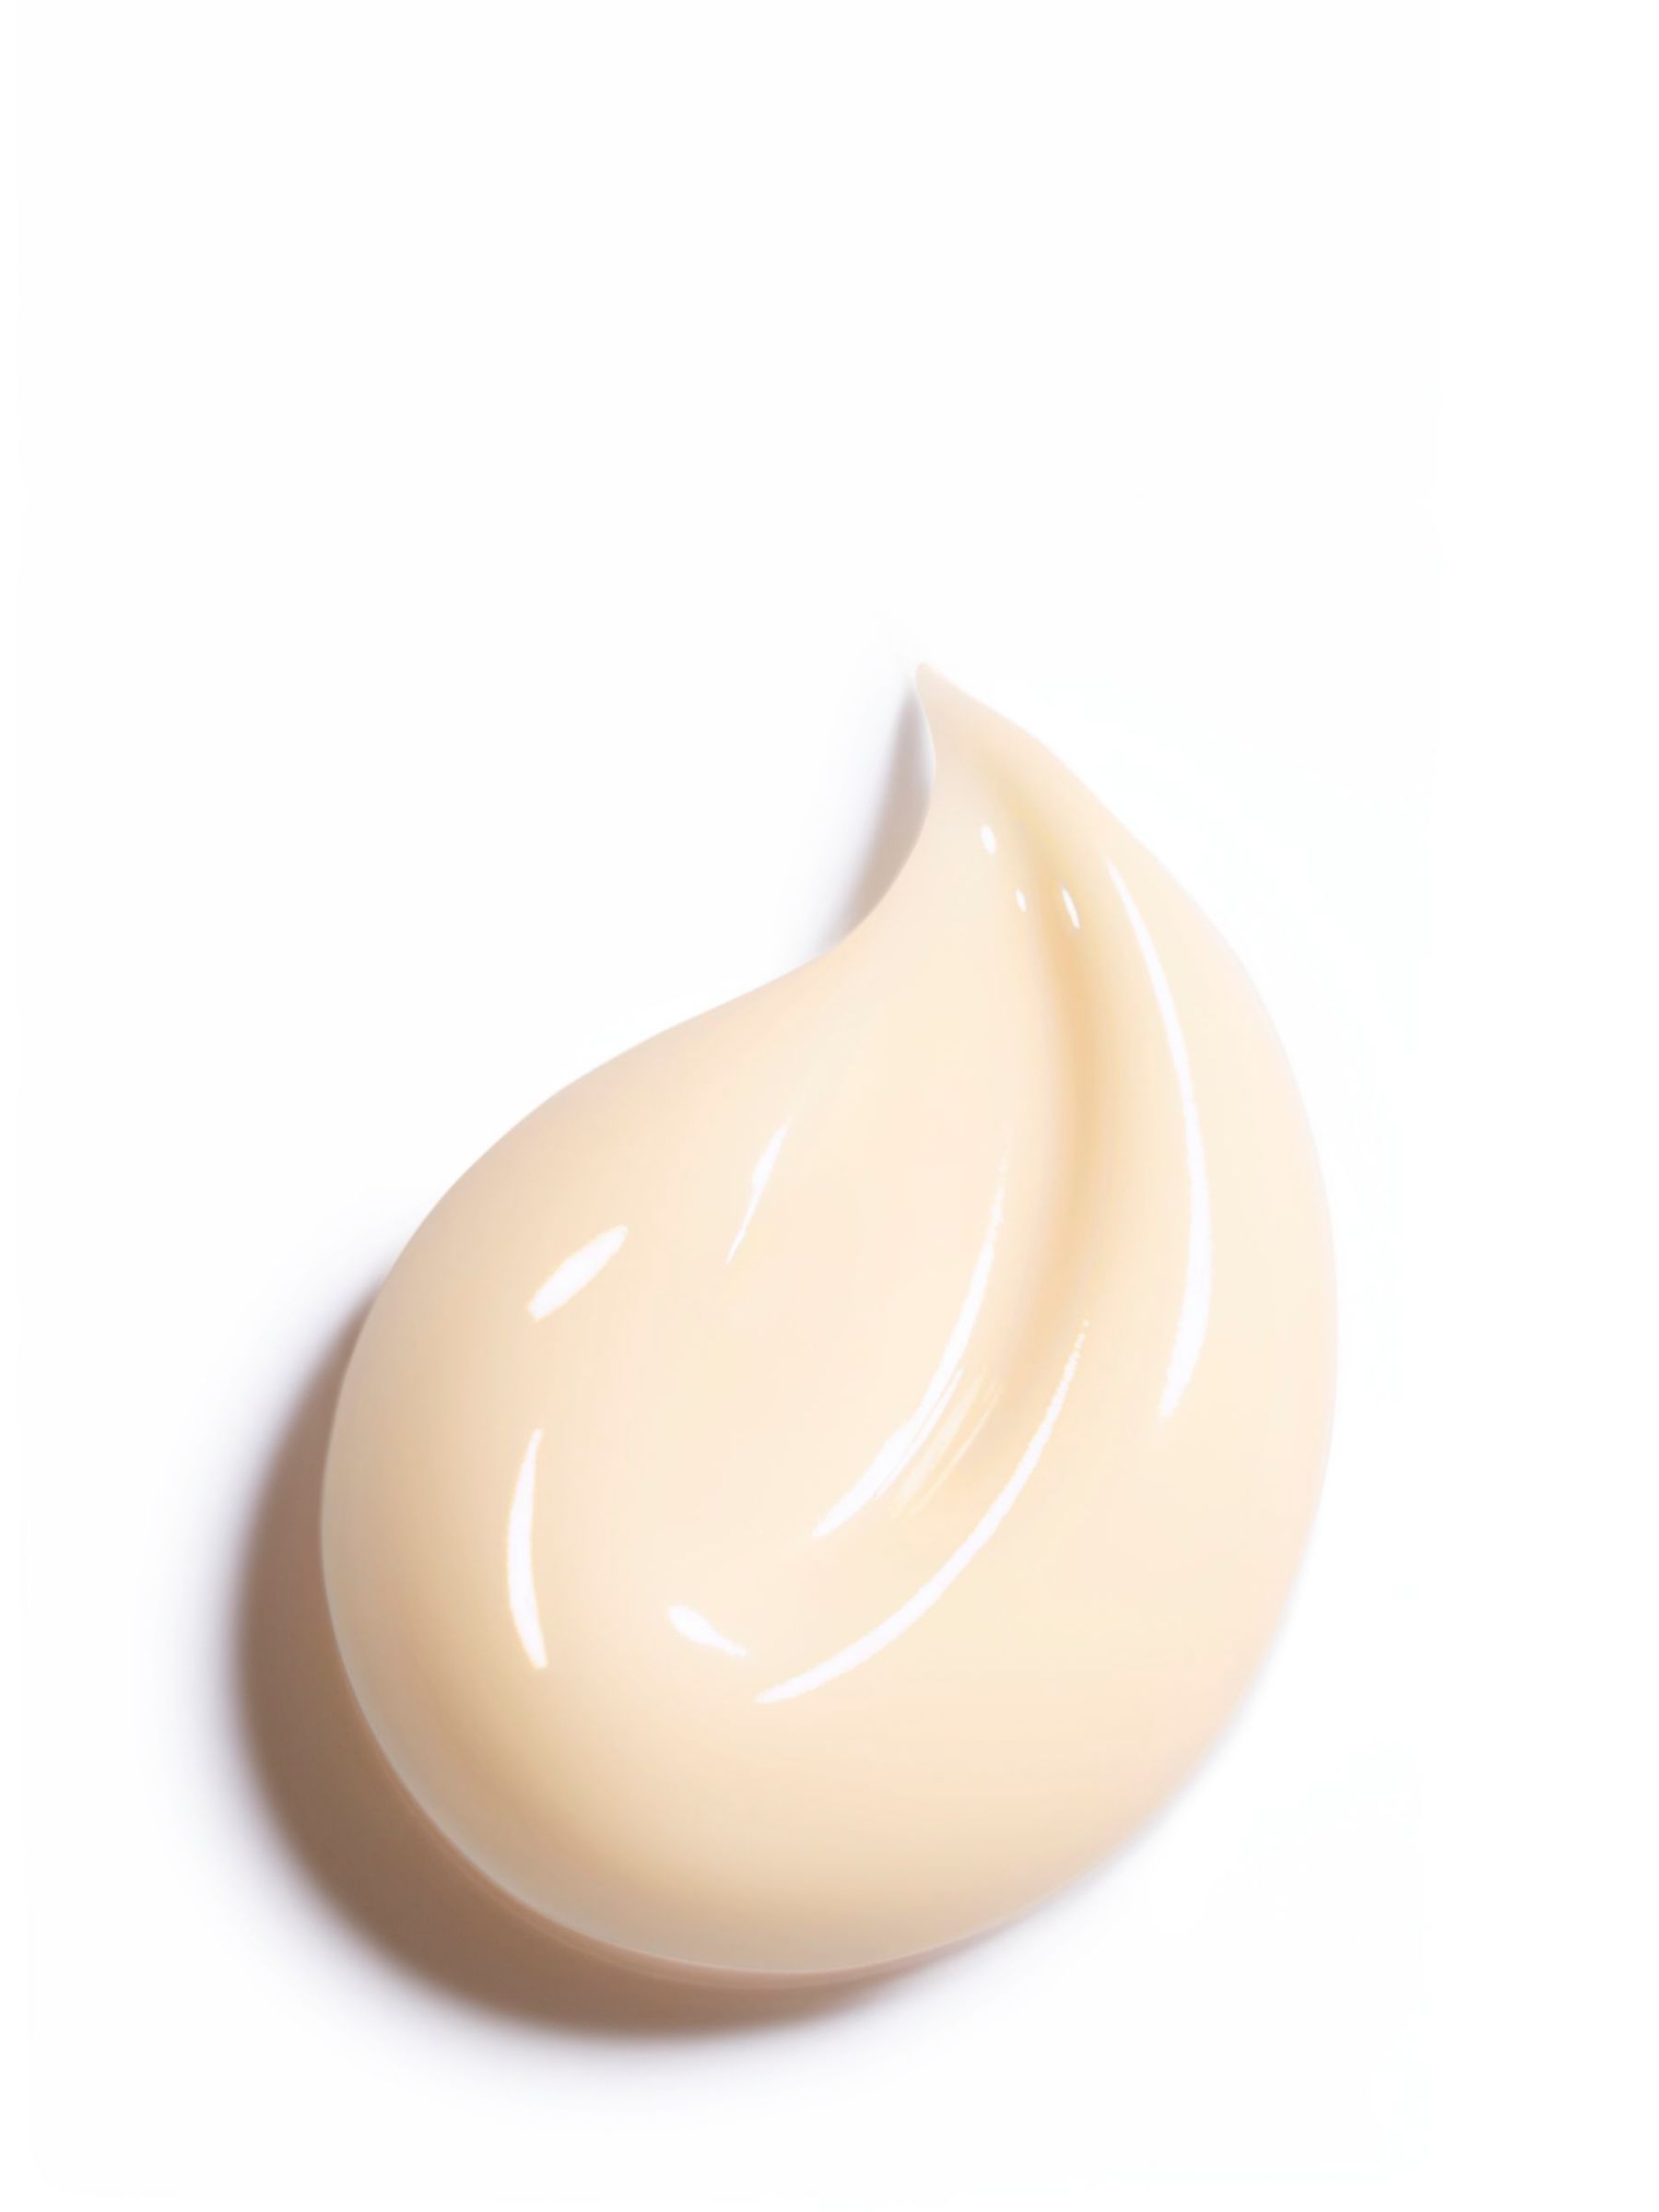 CHANEL Sublimage La Crème Texture Universelle Ultimate Cream Jar, 50g 3